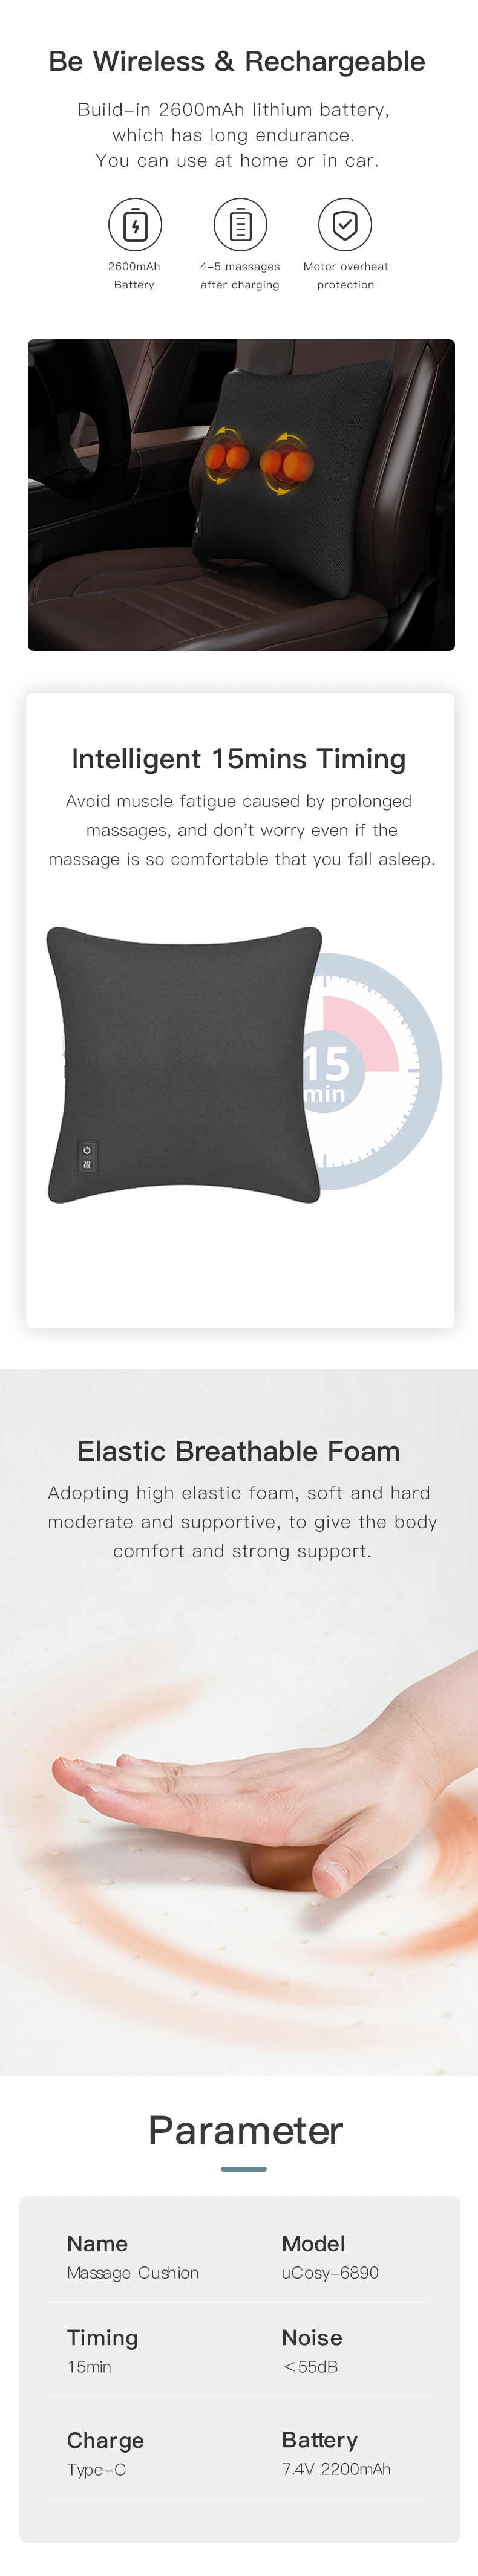 Hot Selling Electric Back Pillow Massager Muscle Relax Shiatsu Massage Seat Cushion